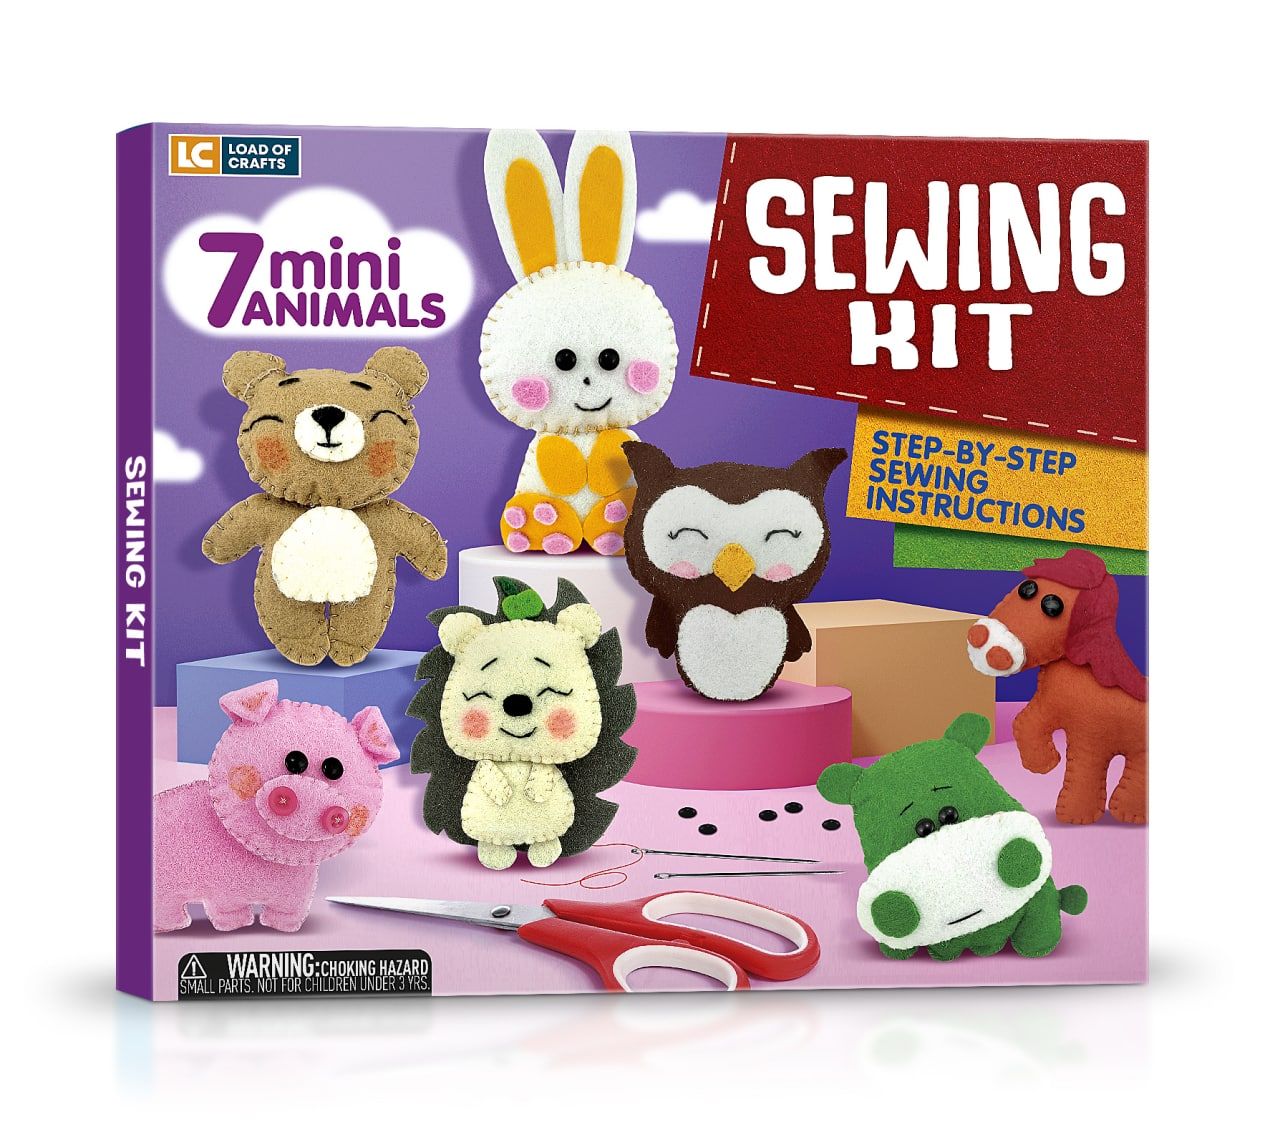 Mini animal sewing kit for kids